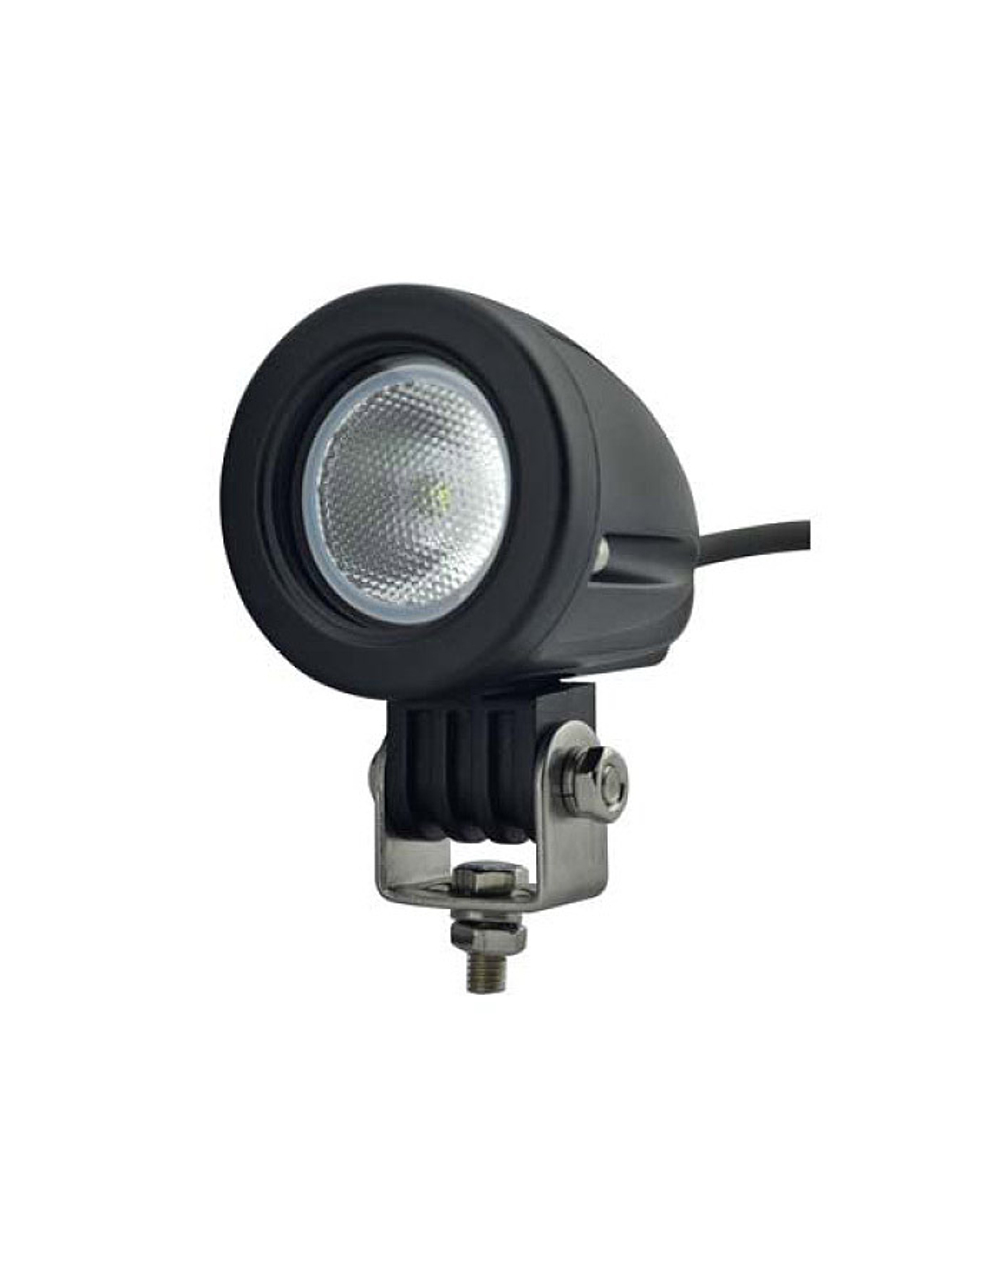 Светодиодная фара водительского света РИФ 57 мм 10W LED